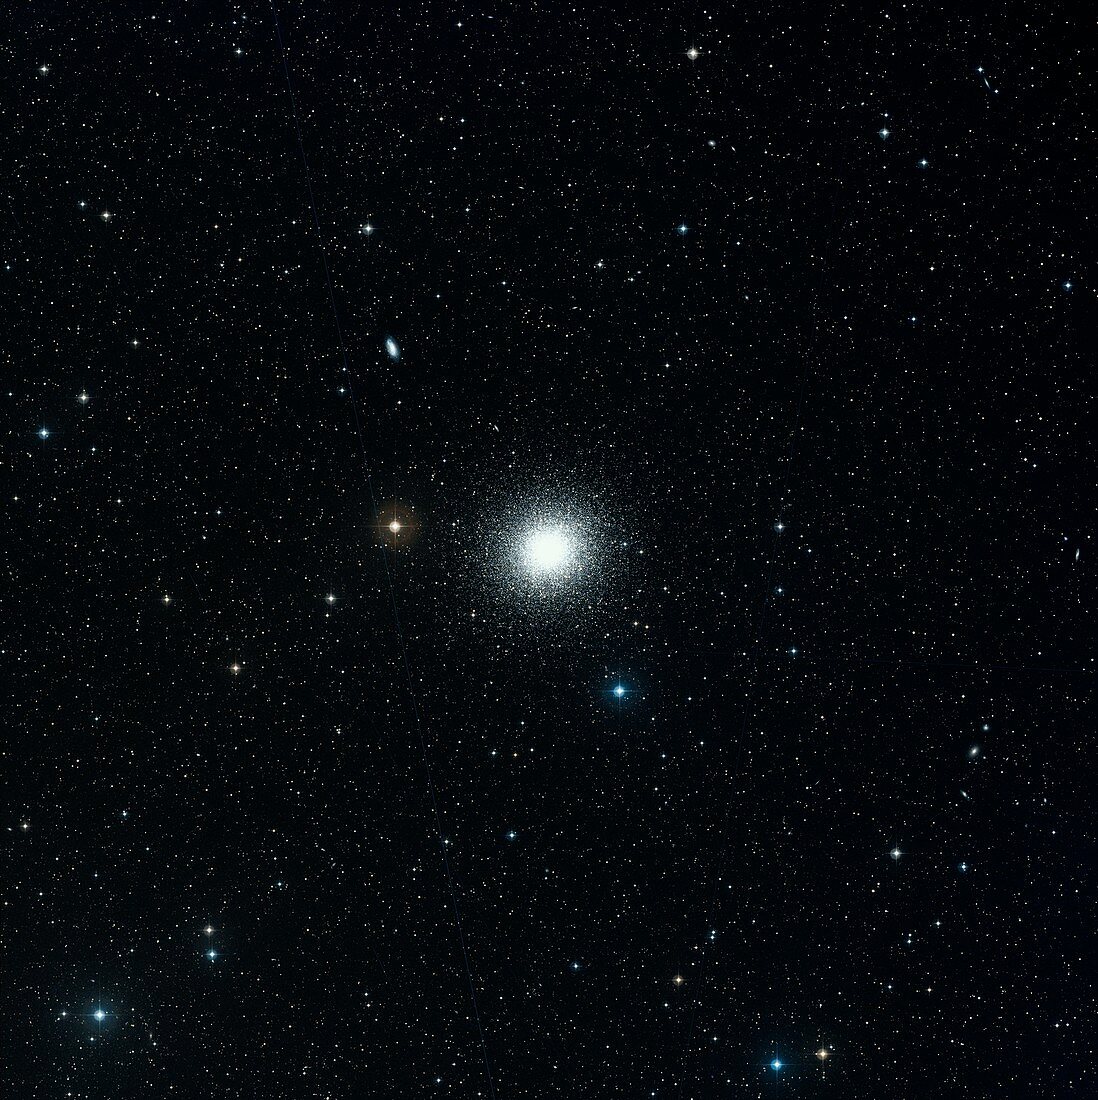 The Hercules Globular Cluster M13